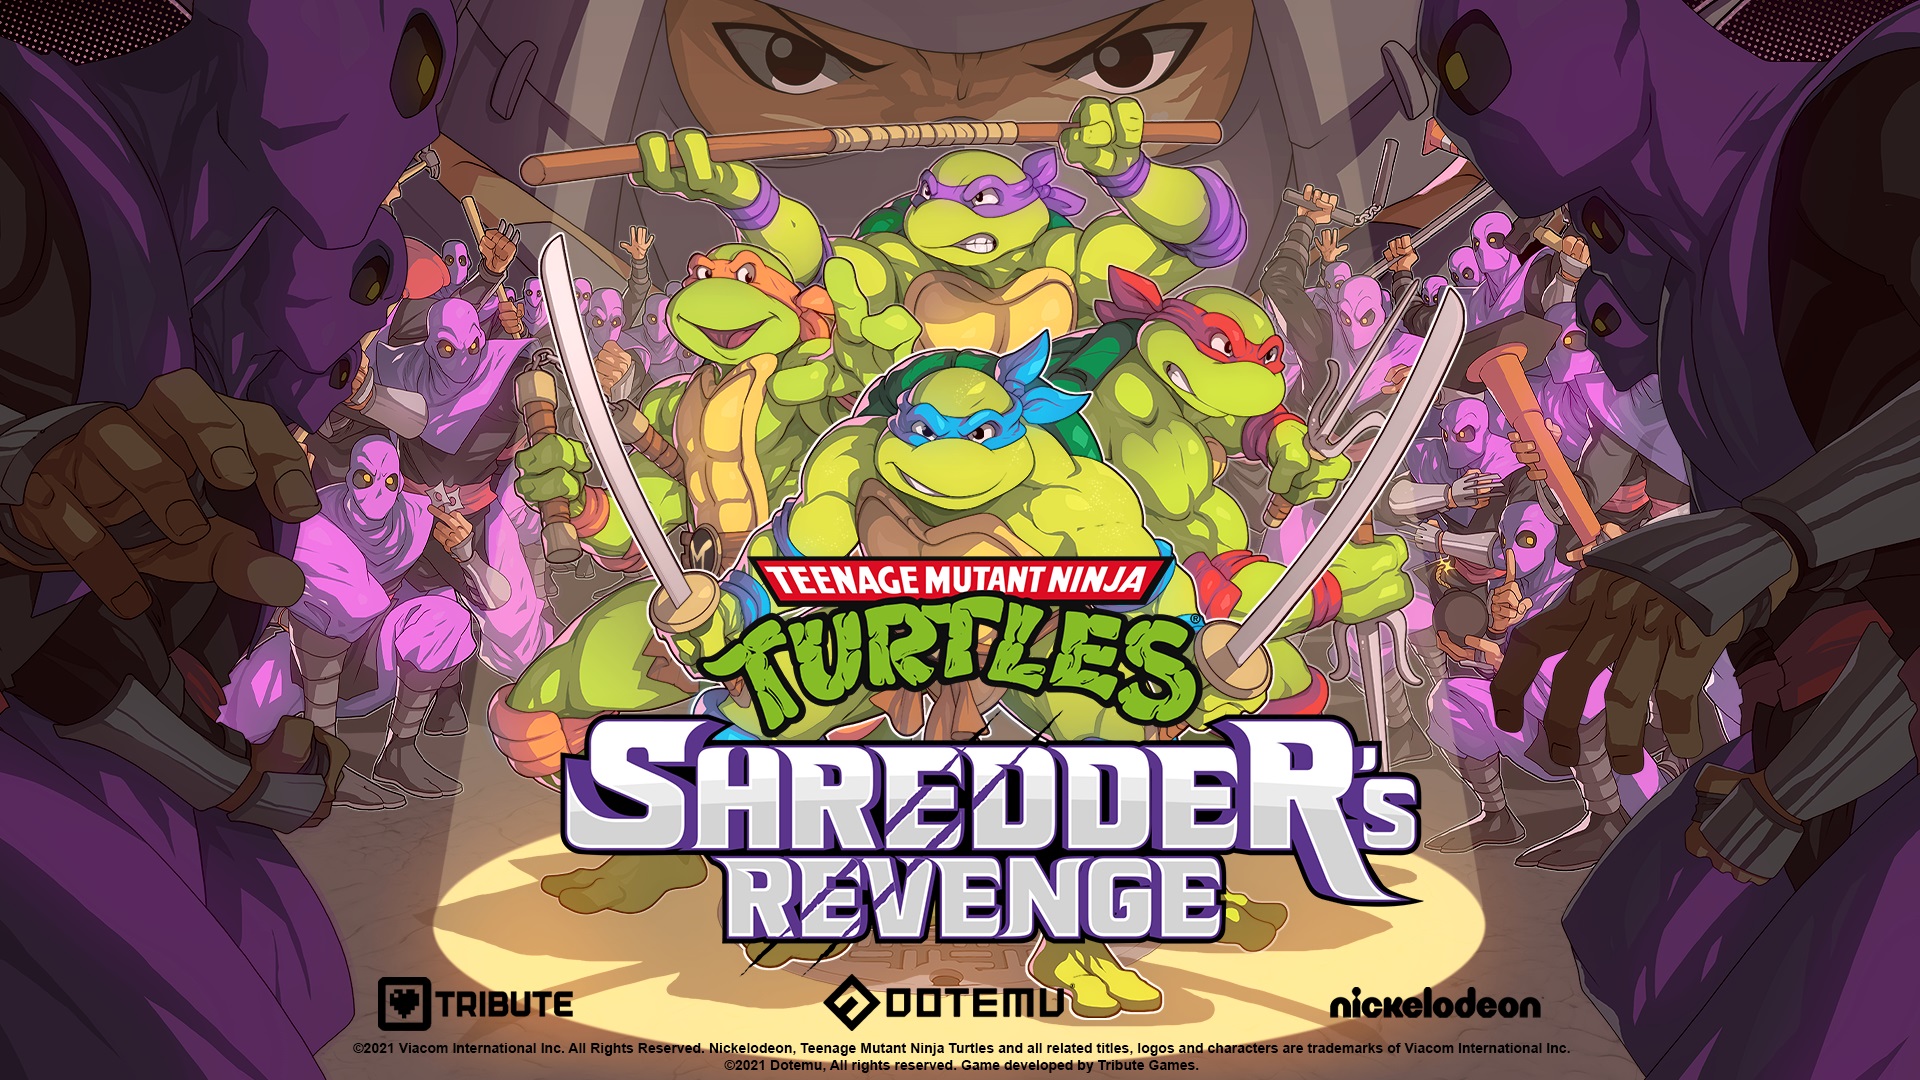 Announcing Teenage Mutant Ninja Turtles: Shredder’s Revenge